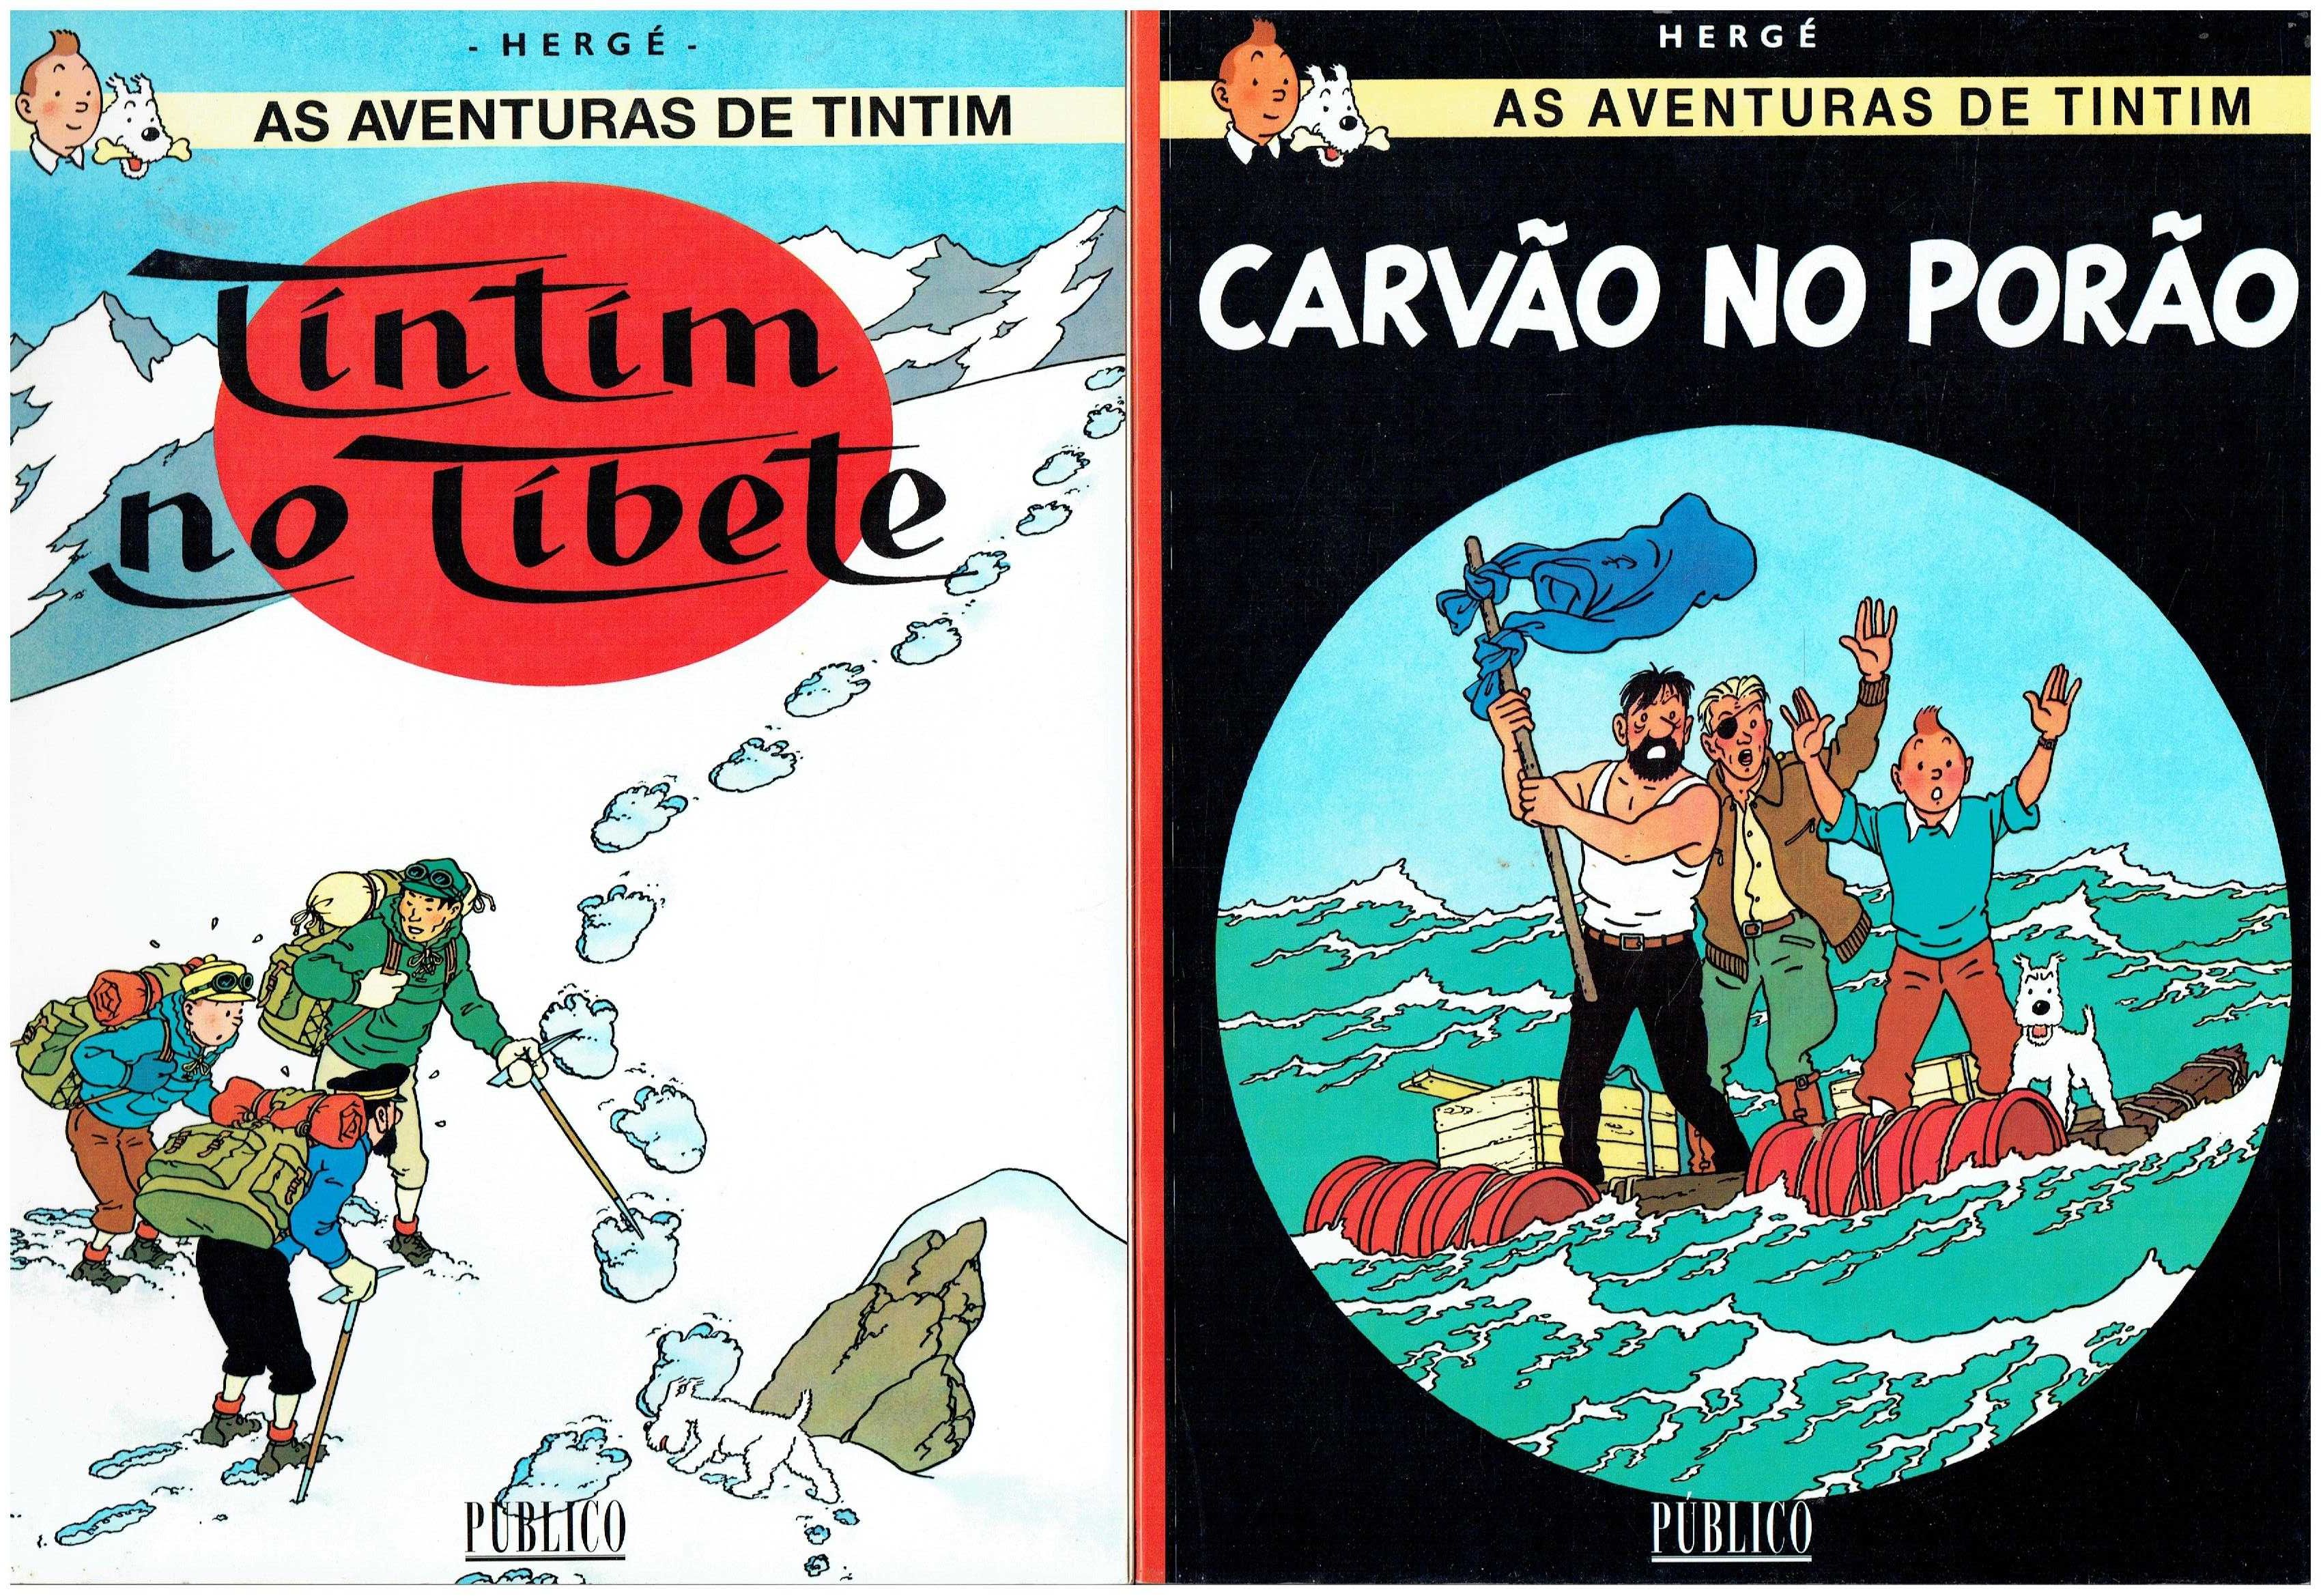 11860

Coleção As Aventuras de Tintim
de Hergé

edição Publico